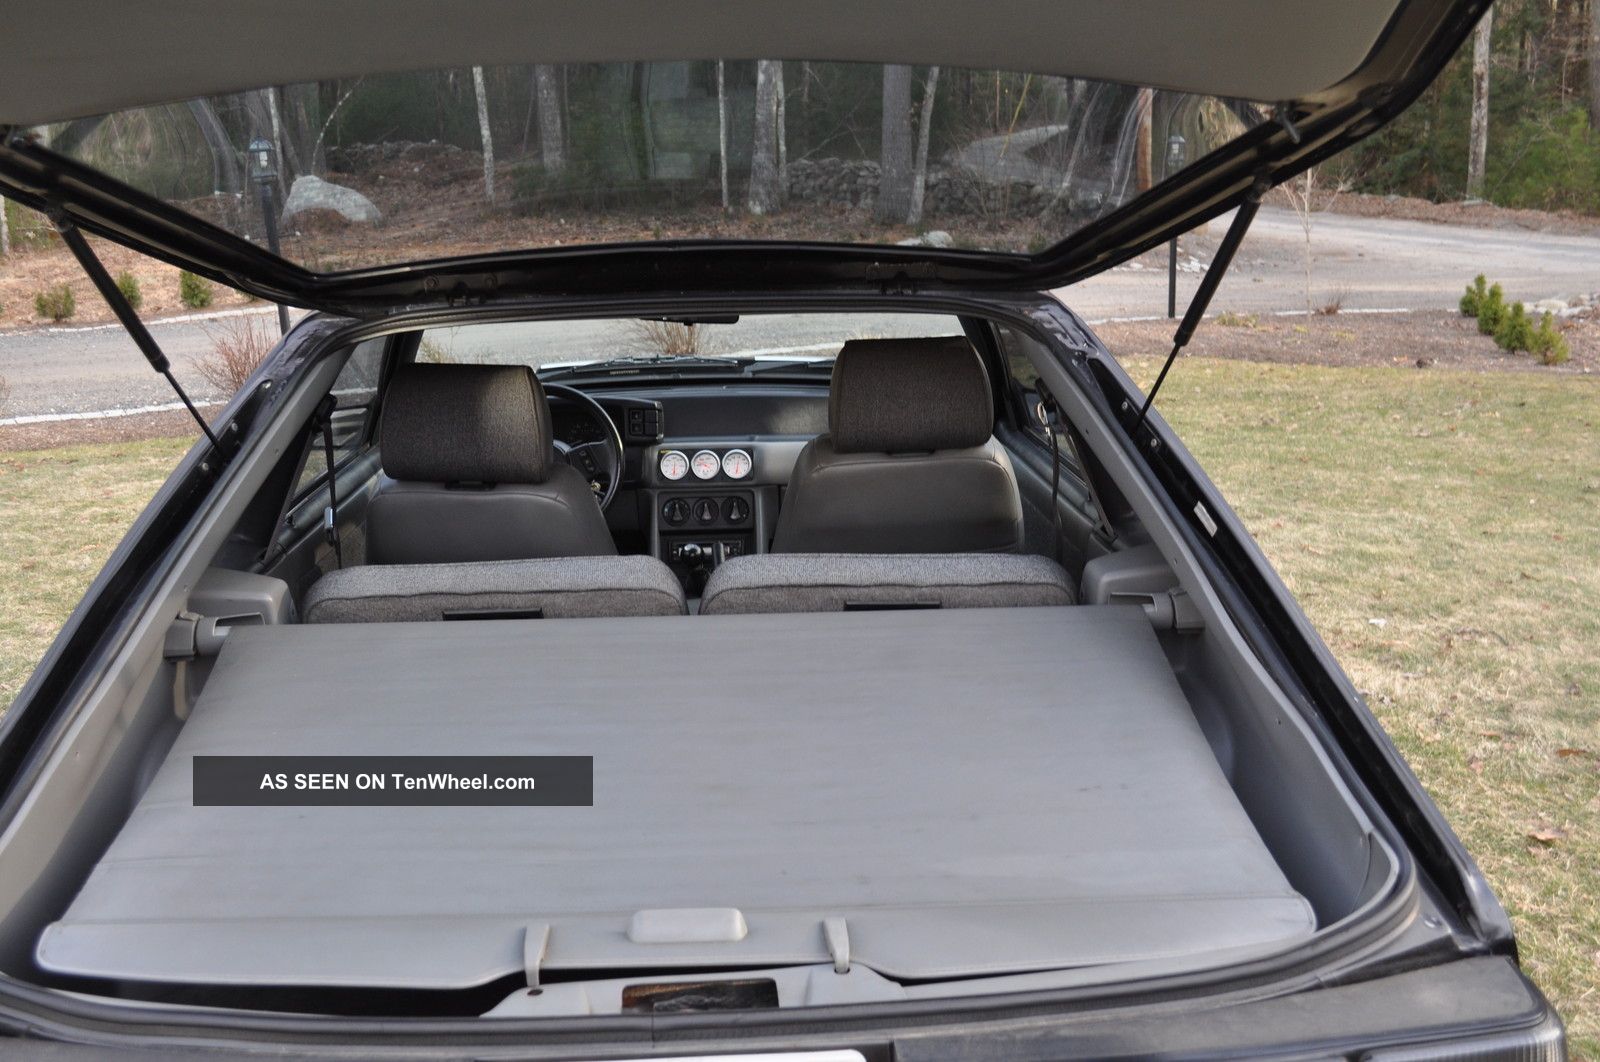 1988 Ford Mustang Gt 5 0 V8 Hatchback 2 Door